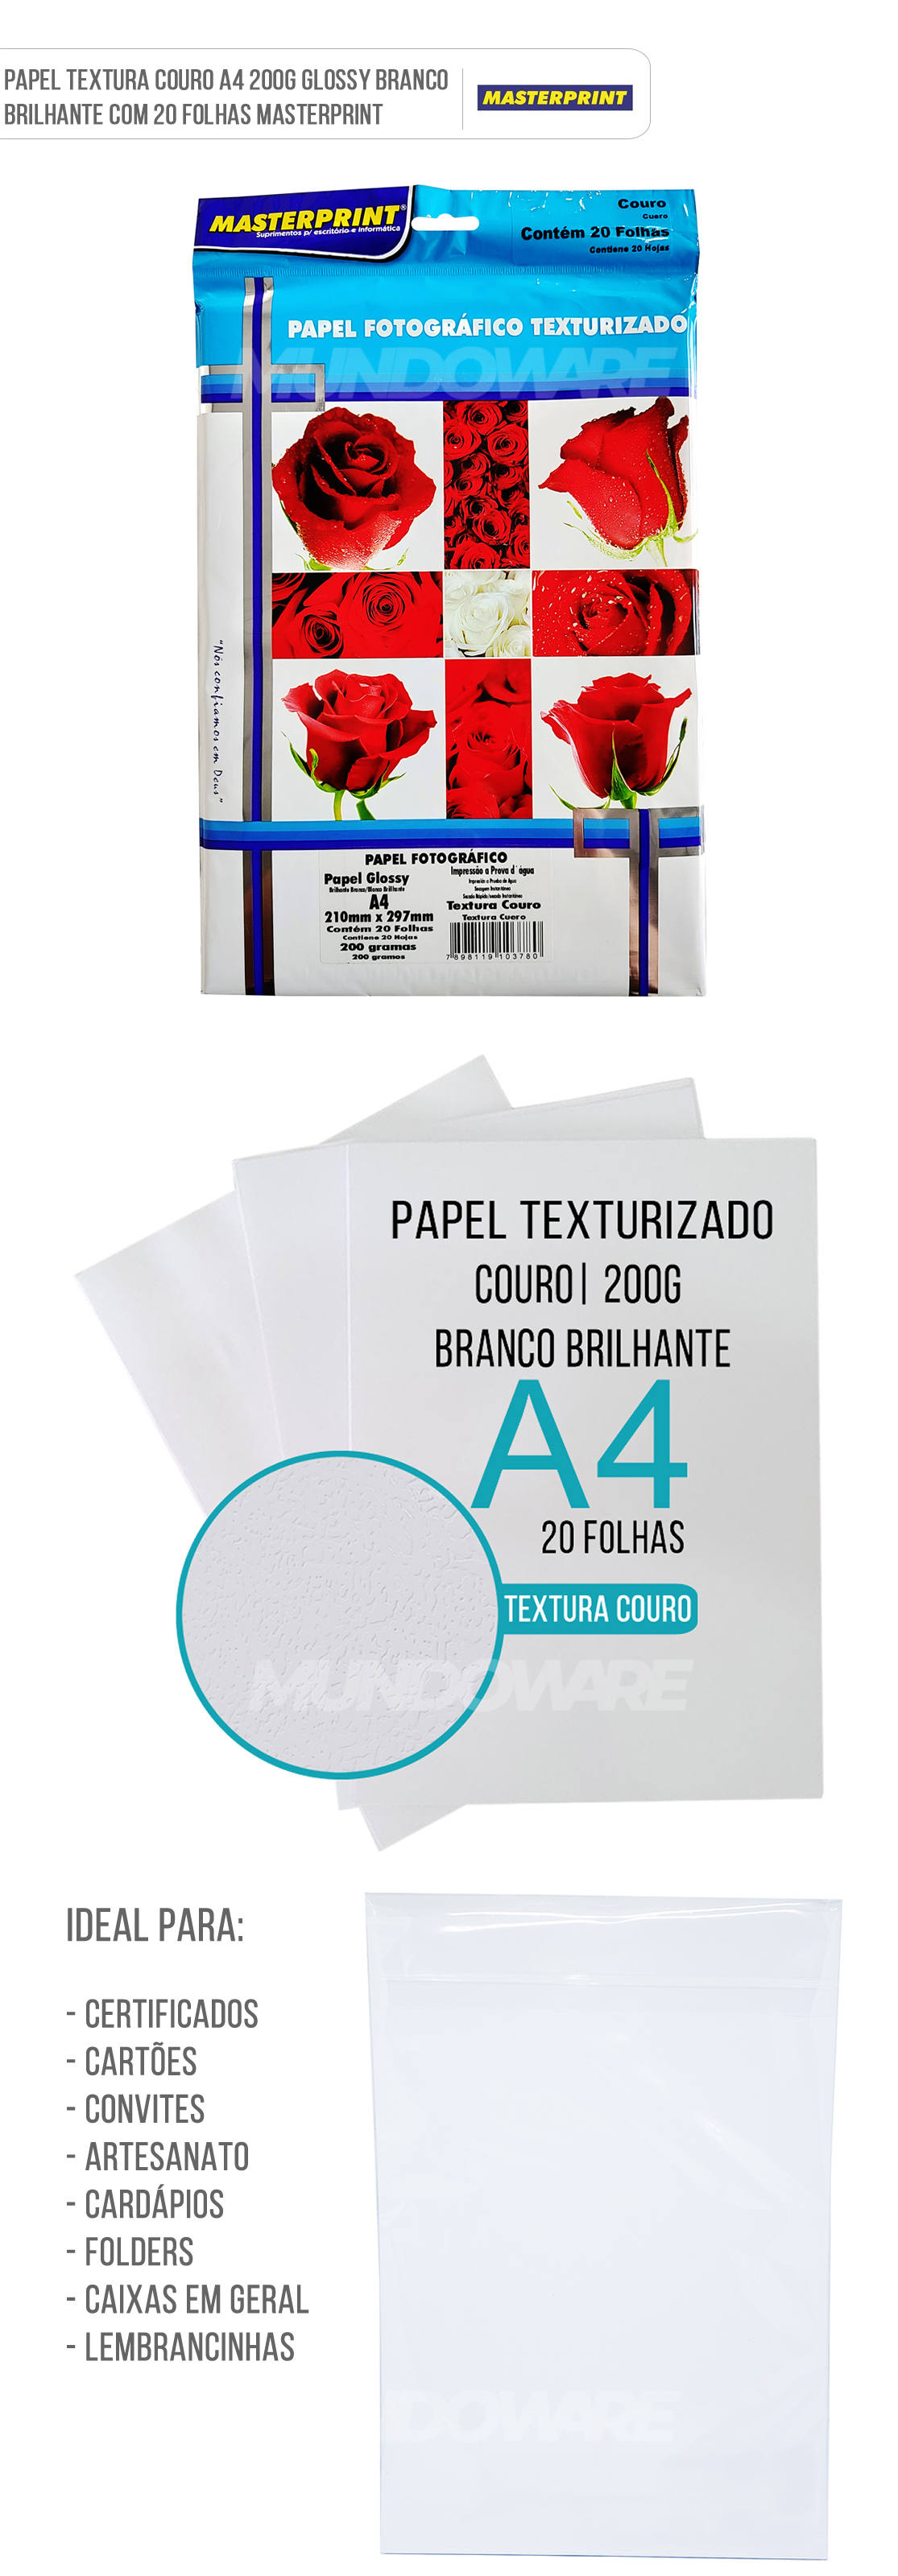 Papel Texturizado Couro 200g A4 Glossy Branco Brilhante com 20 folhas